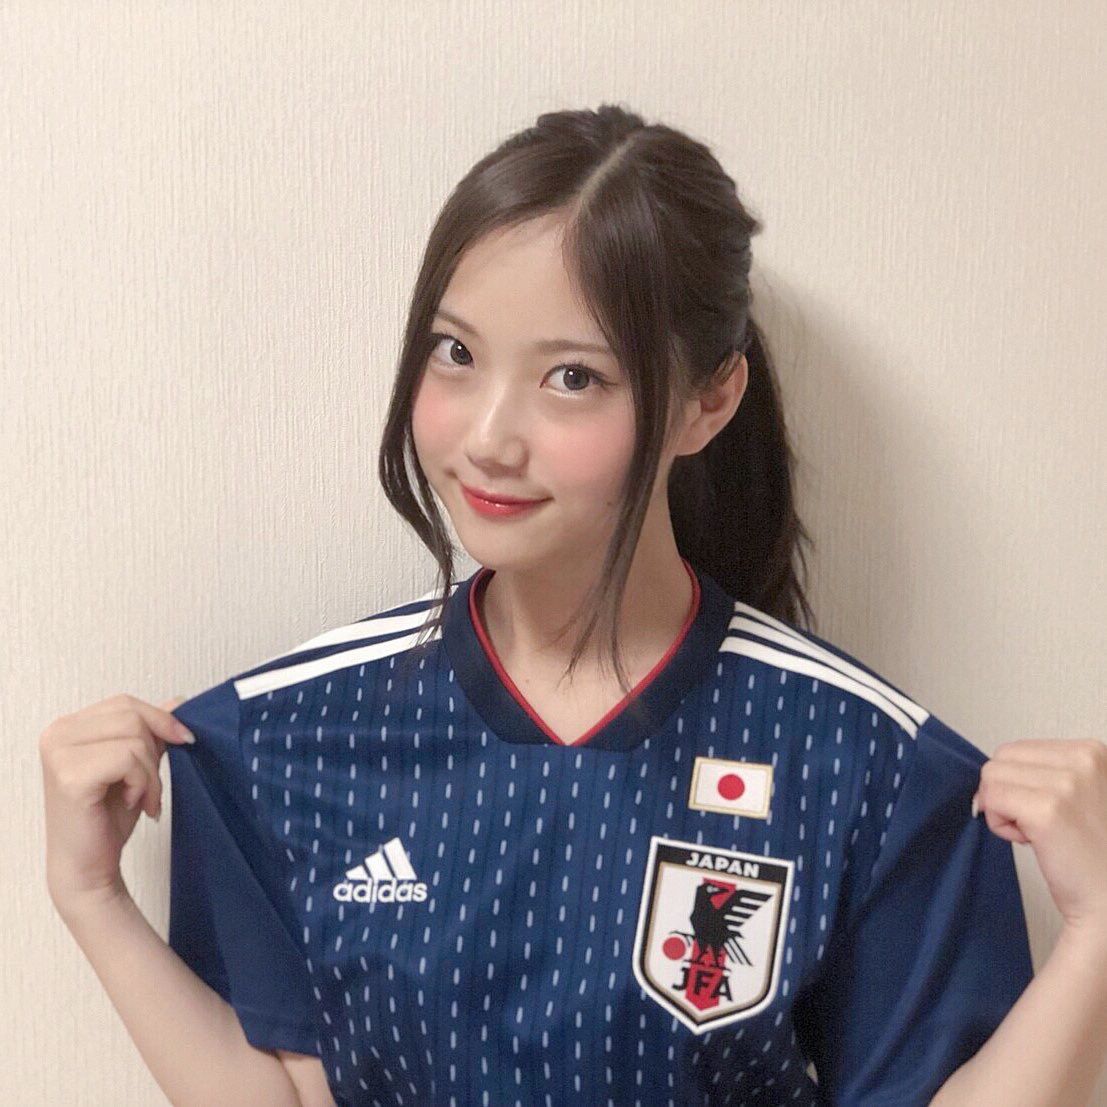 野村彩也子はサッカーファン